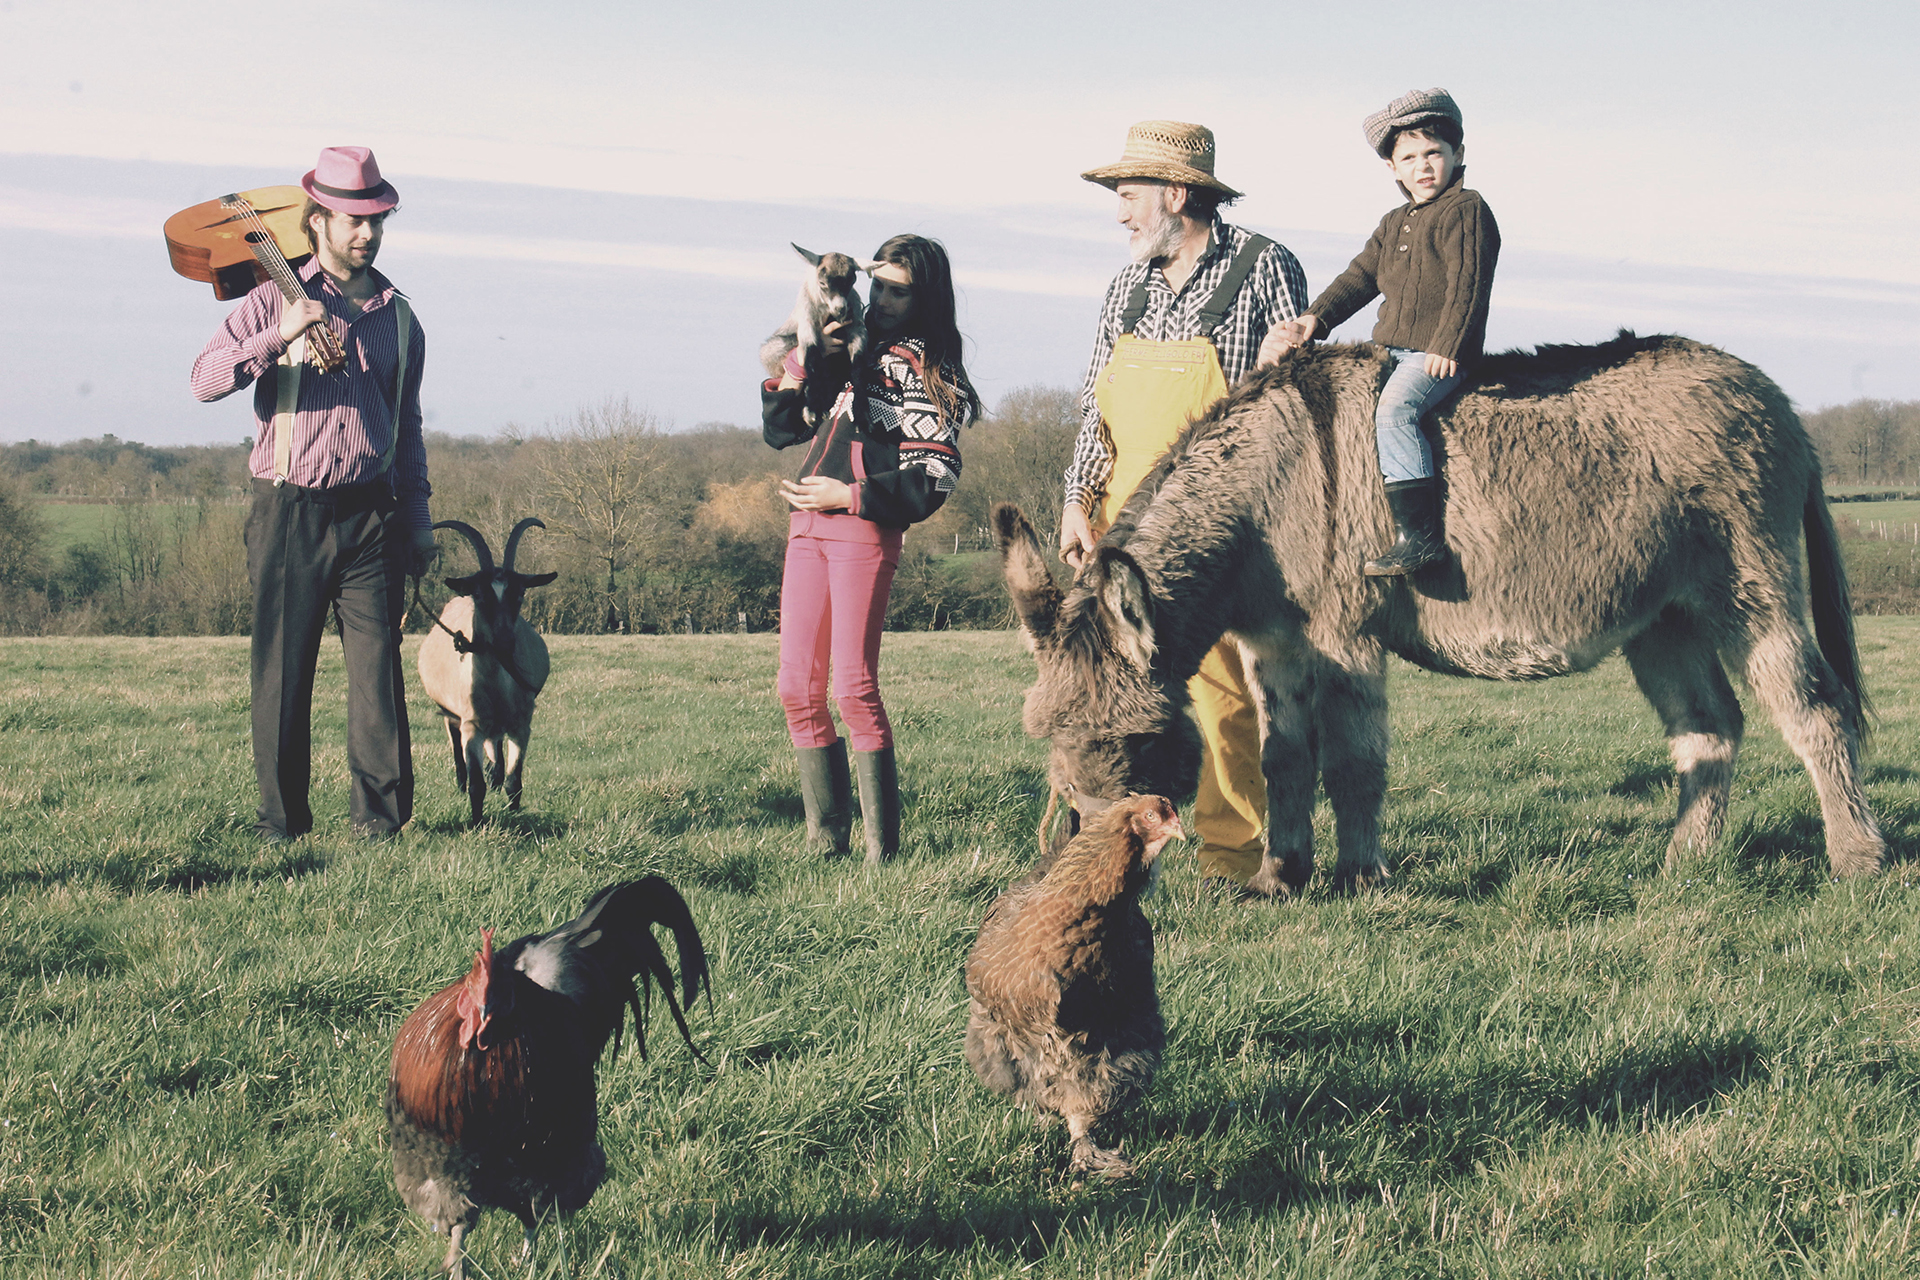 Le fermier Tiligolo, le musicien Fanfare et les enfants se promènent dans un champ avec les animaux de la ferme